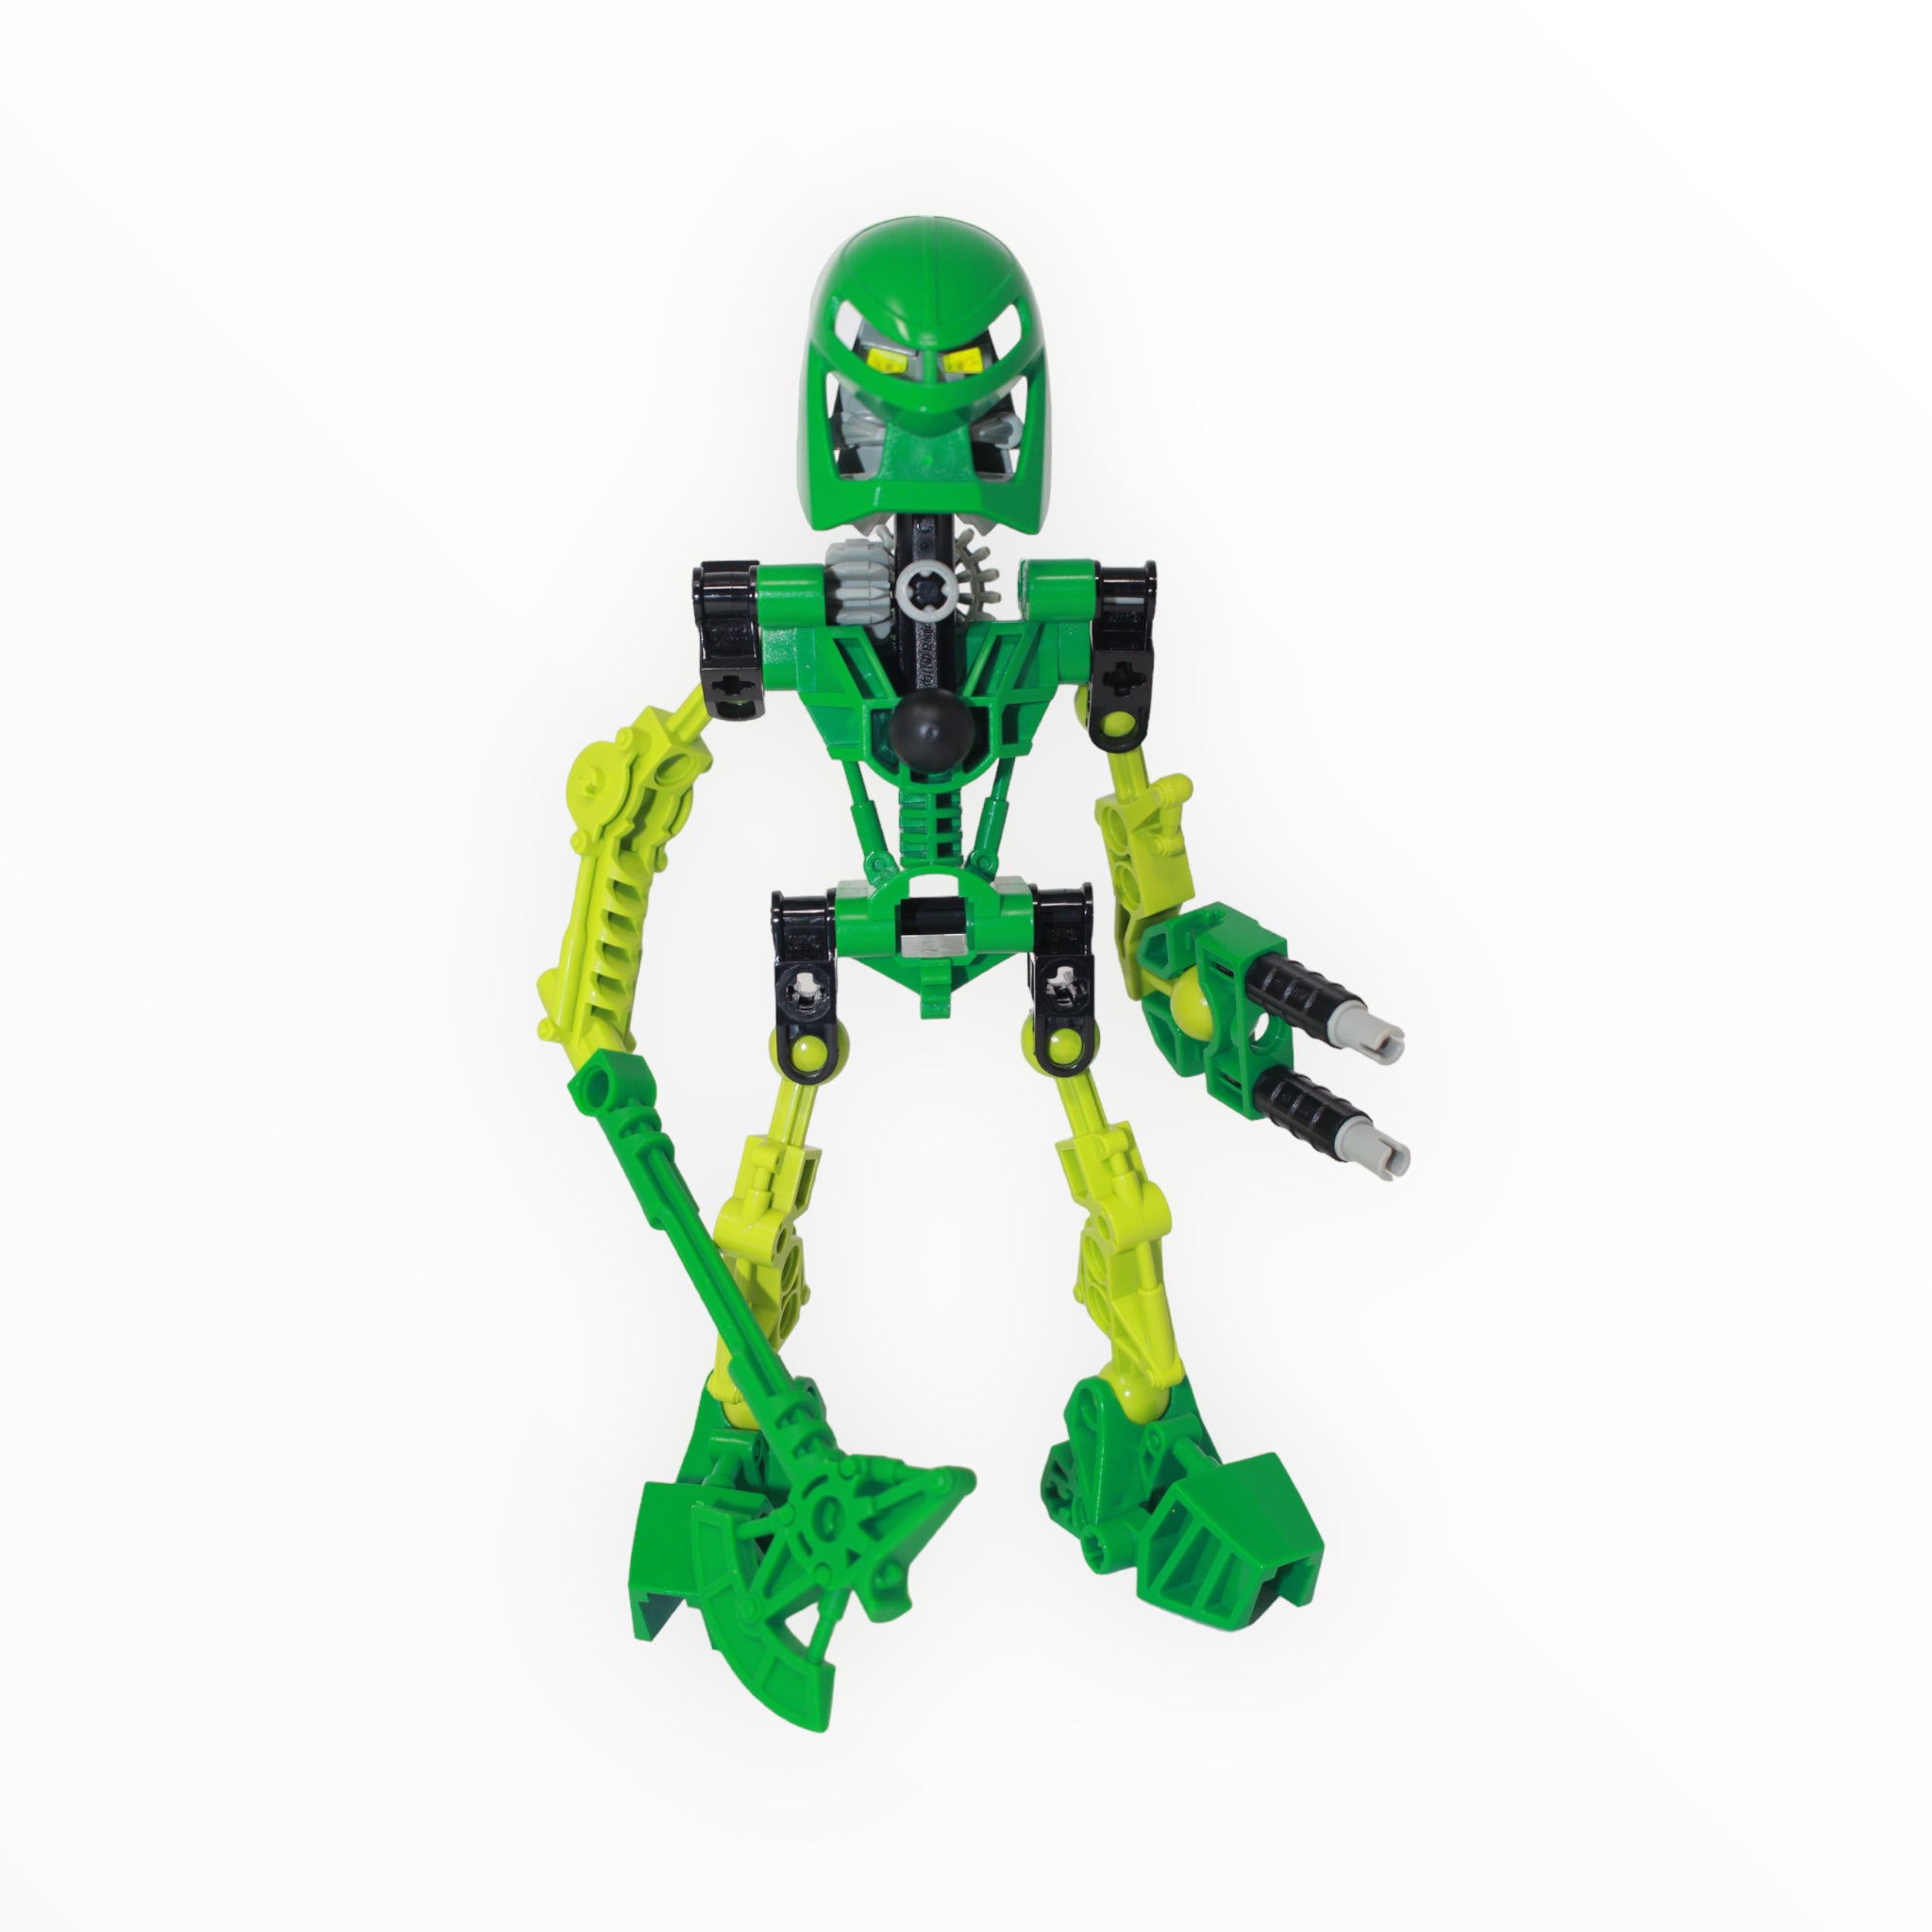 Used Set 8535 Bionicle Lewa